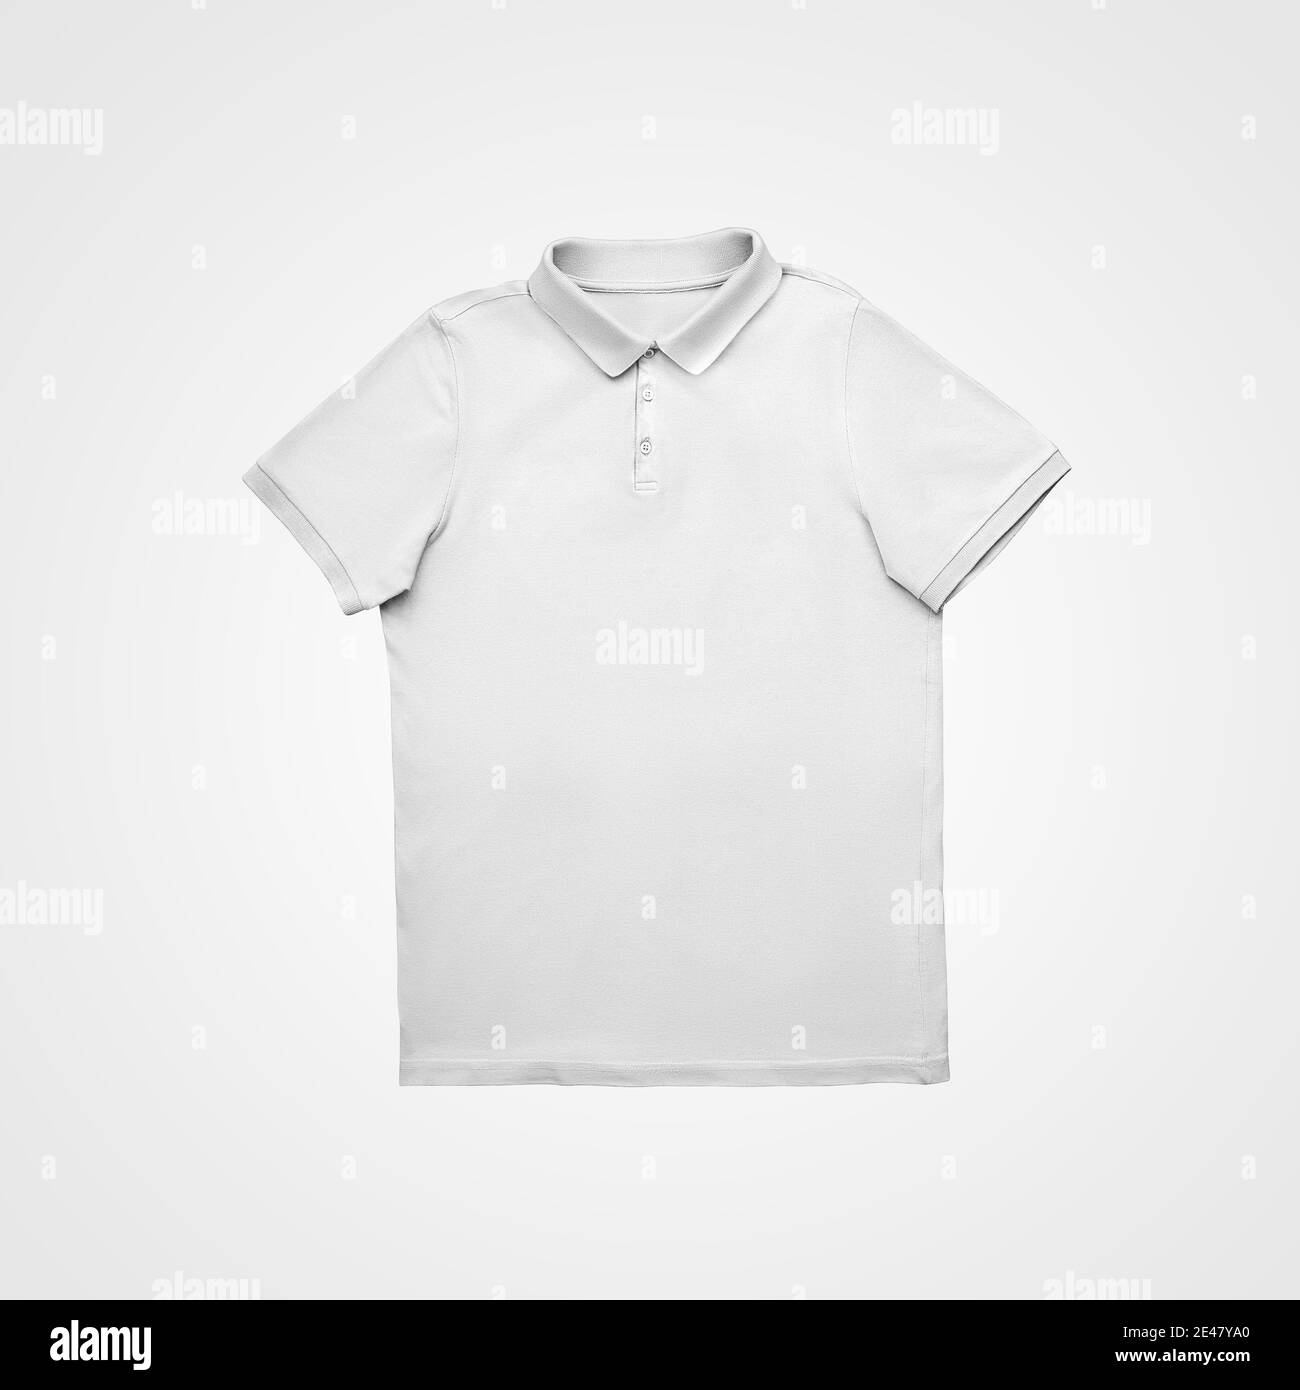 Camisa blanca con botones fotografías imágenes alta resolución Alamy